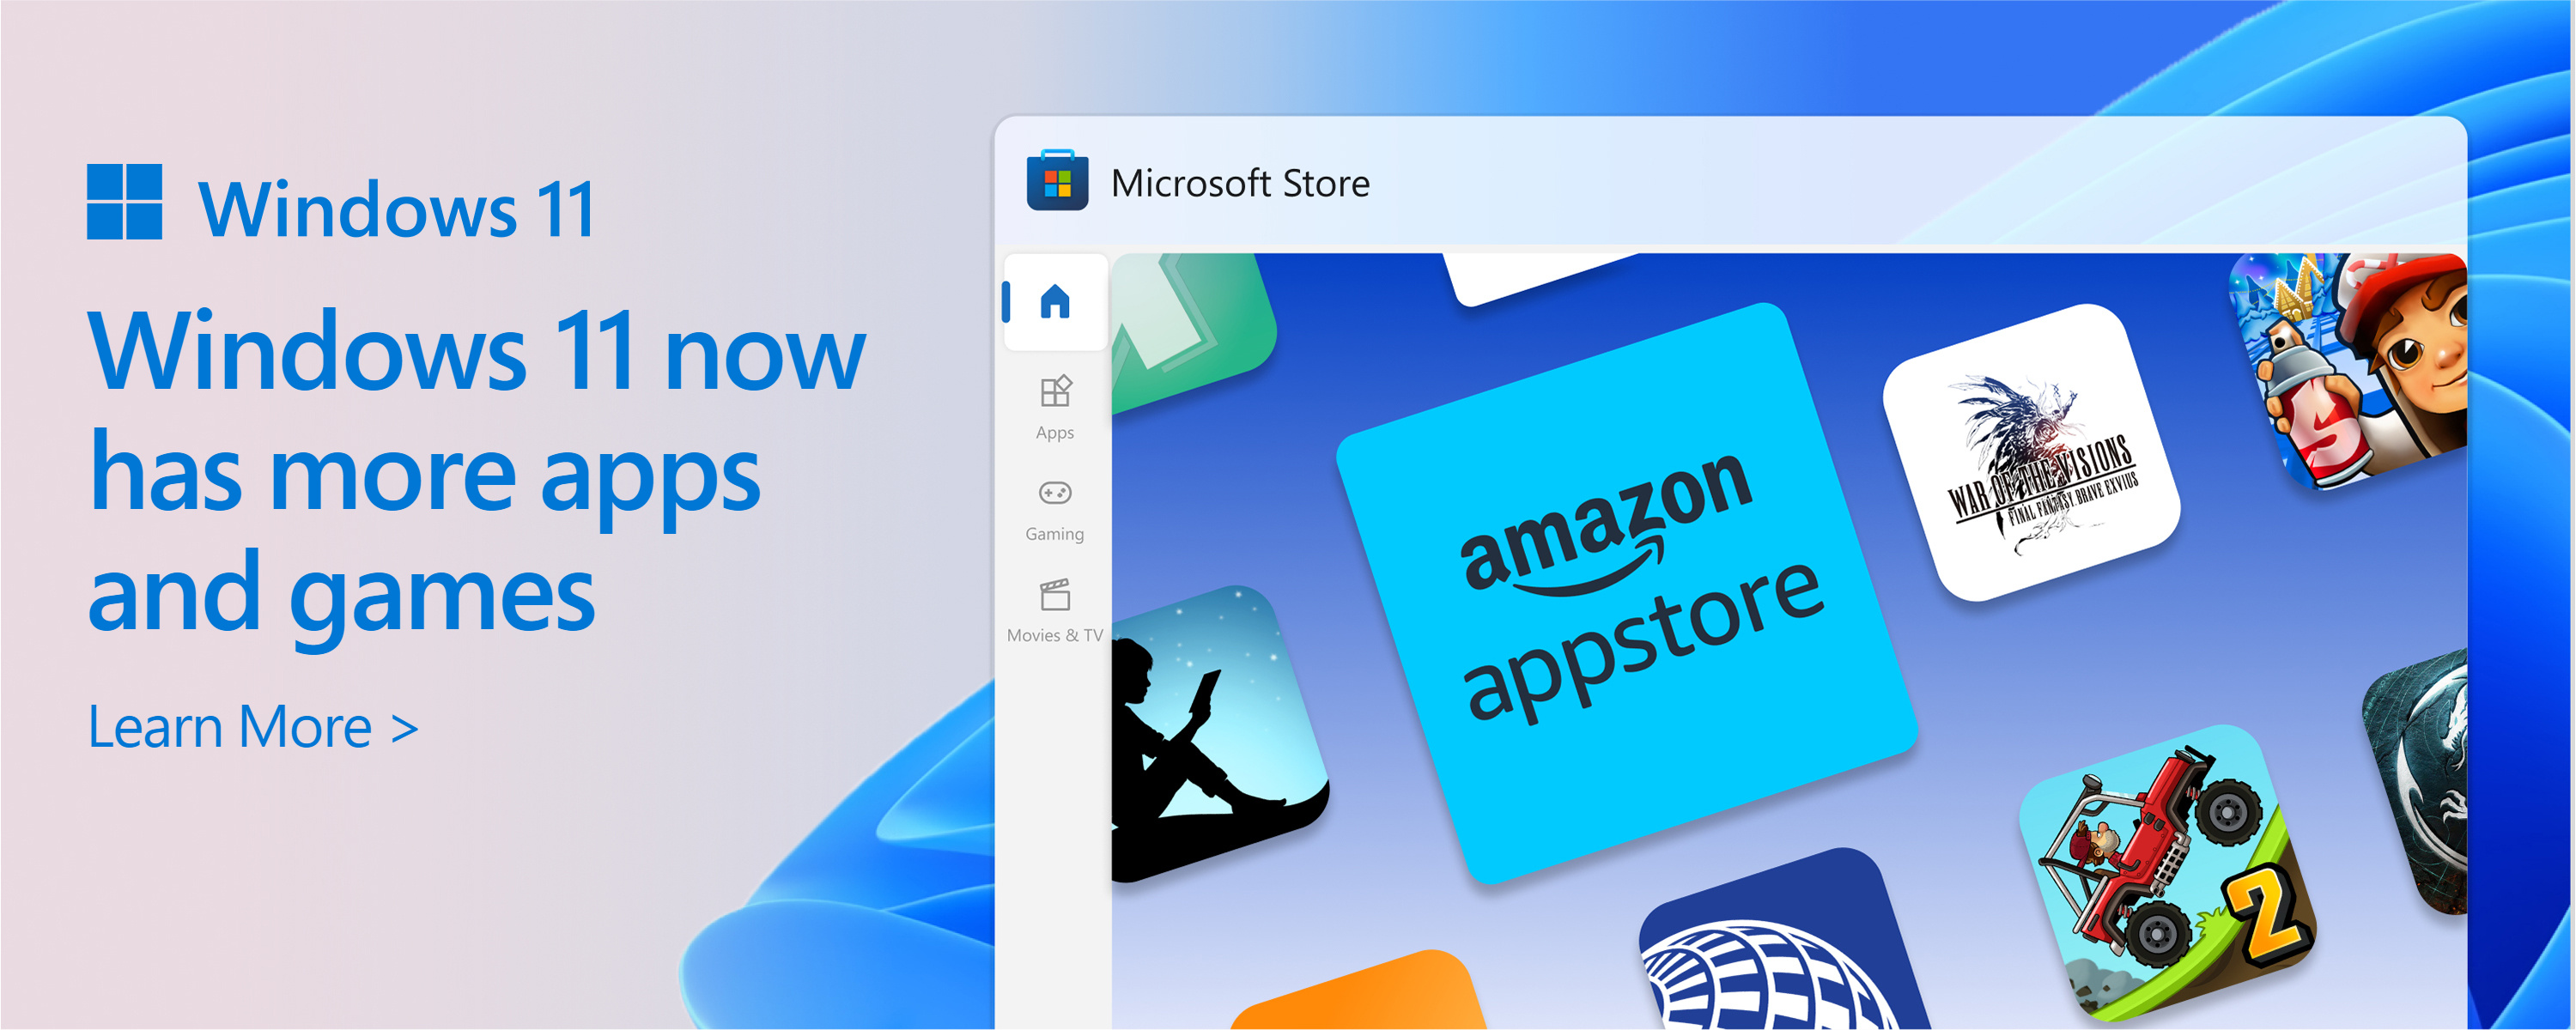 Snímka obrazovky Microsoft Storu s textom: Katalóg obchodu Microsoft Store rastie. Windows 11 poskytuje viac aplikácií a hier, ktoré chcete a potrebujete.